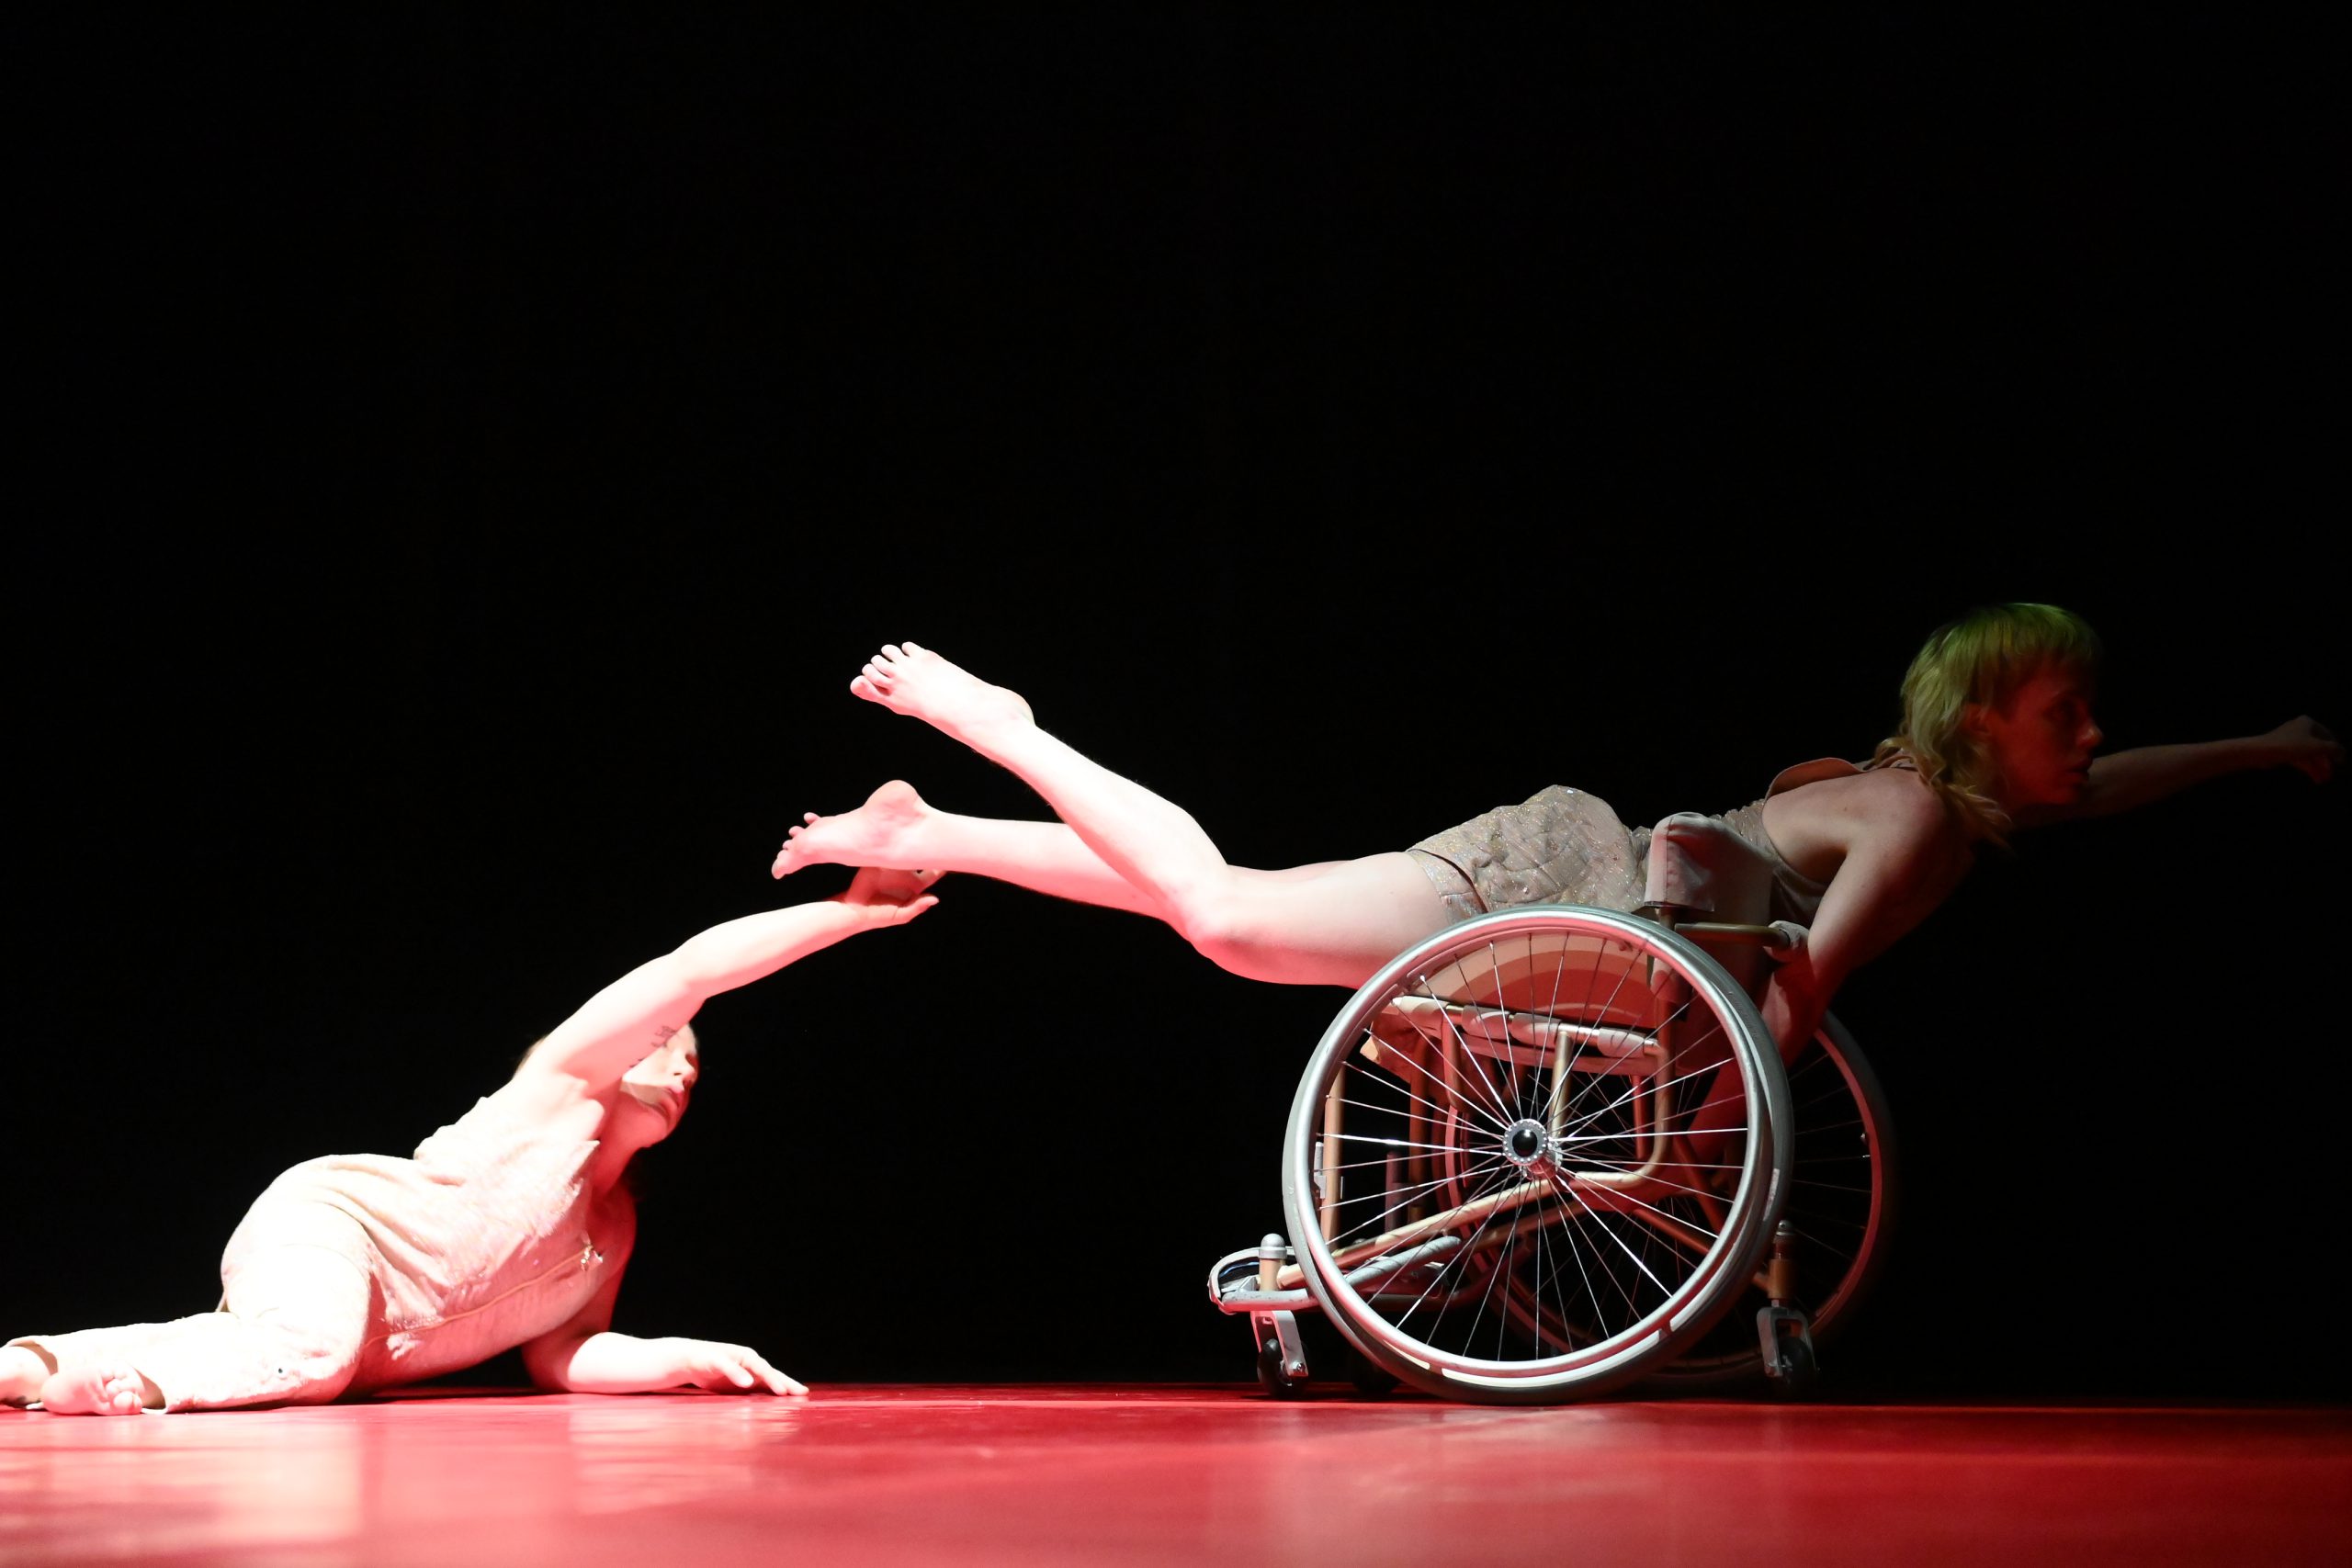 Två kvinnliga dansare i profil med blickarna åt höger. De är på en scen med svart fond och röd dansamatta. Ena dansaren ligger på golvet med bröstkorgen upprätt och sträcker ena armen mot den andra dansaren som ligger på en rullstol med ena armen utsträckt åt höger. Foto Sandro DondaL